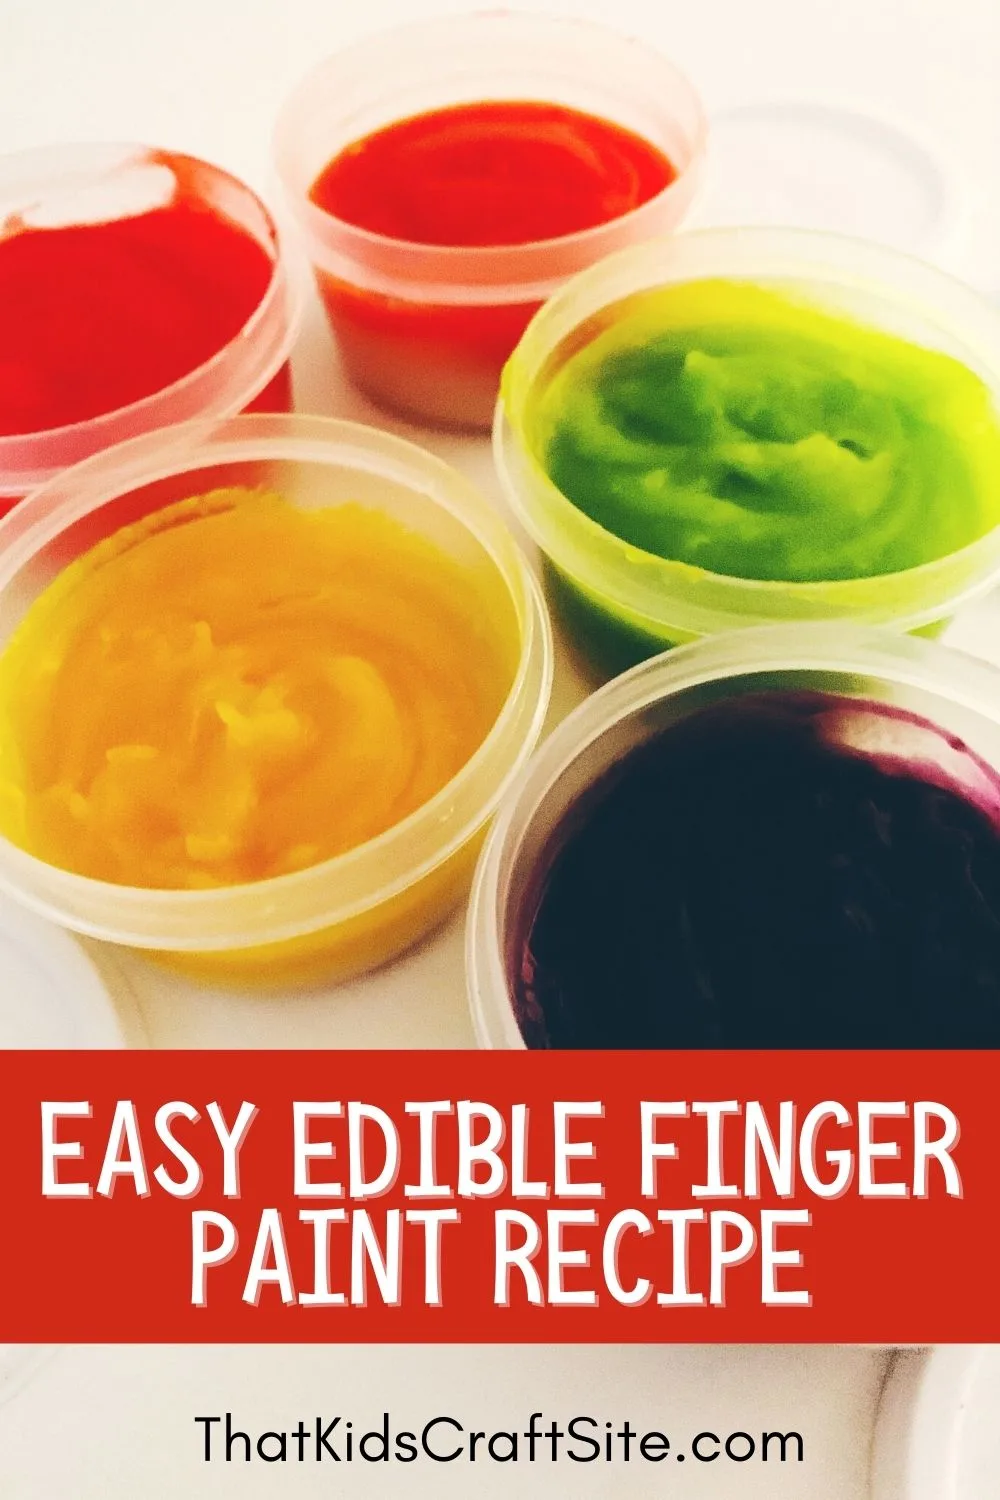 Edible Finger Paint Recipe for Kids